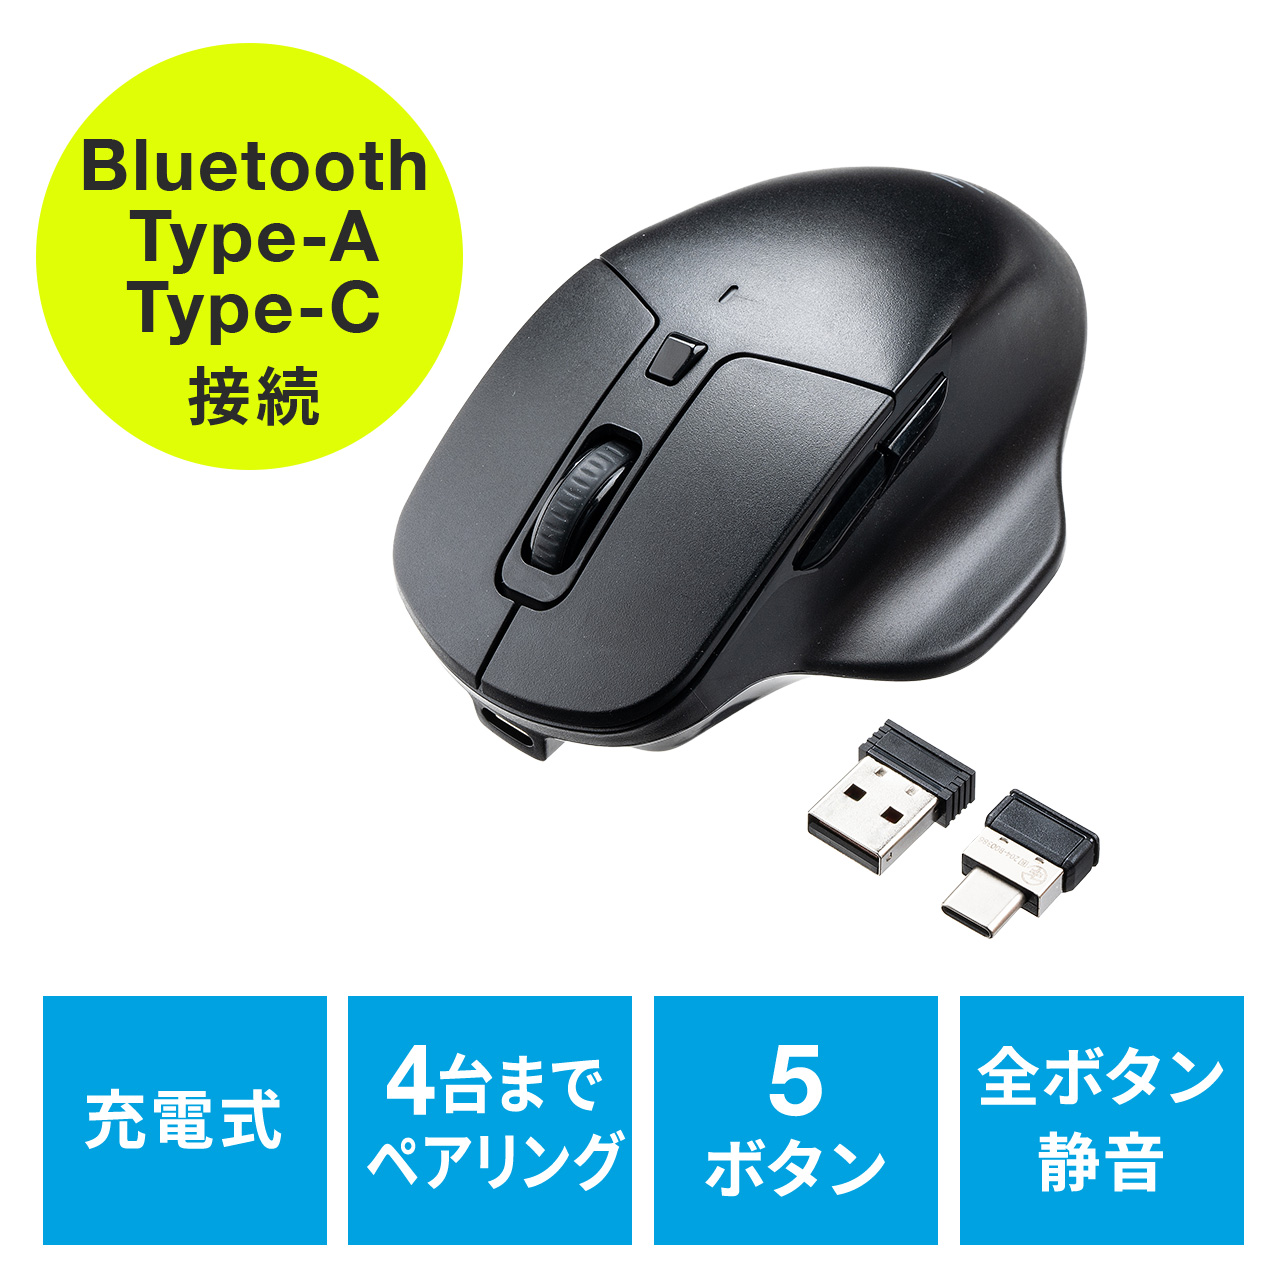 マウス Bluetooth エルゴマウス マルチペアリング 静音ボタン カウント切り替え 乾電池式 レッド EZ4-MABT102R